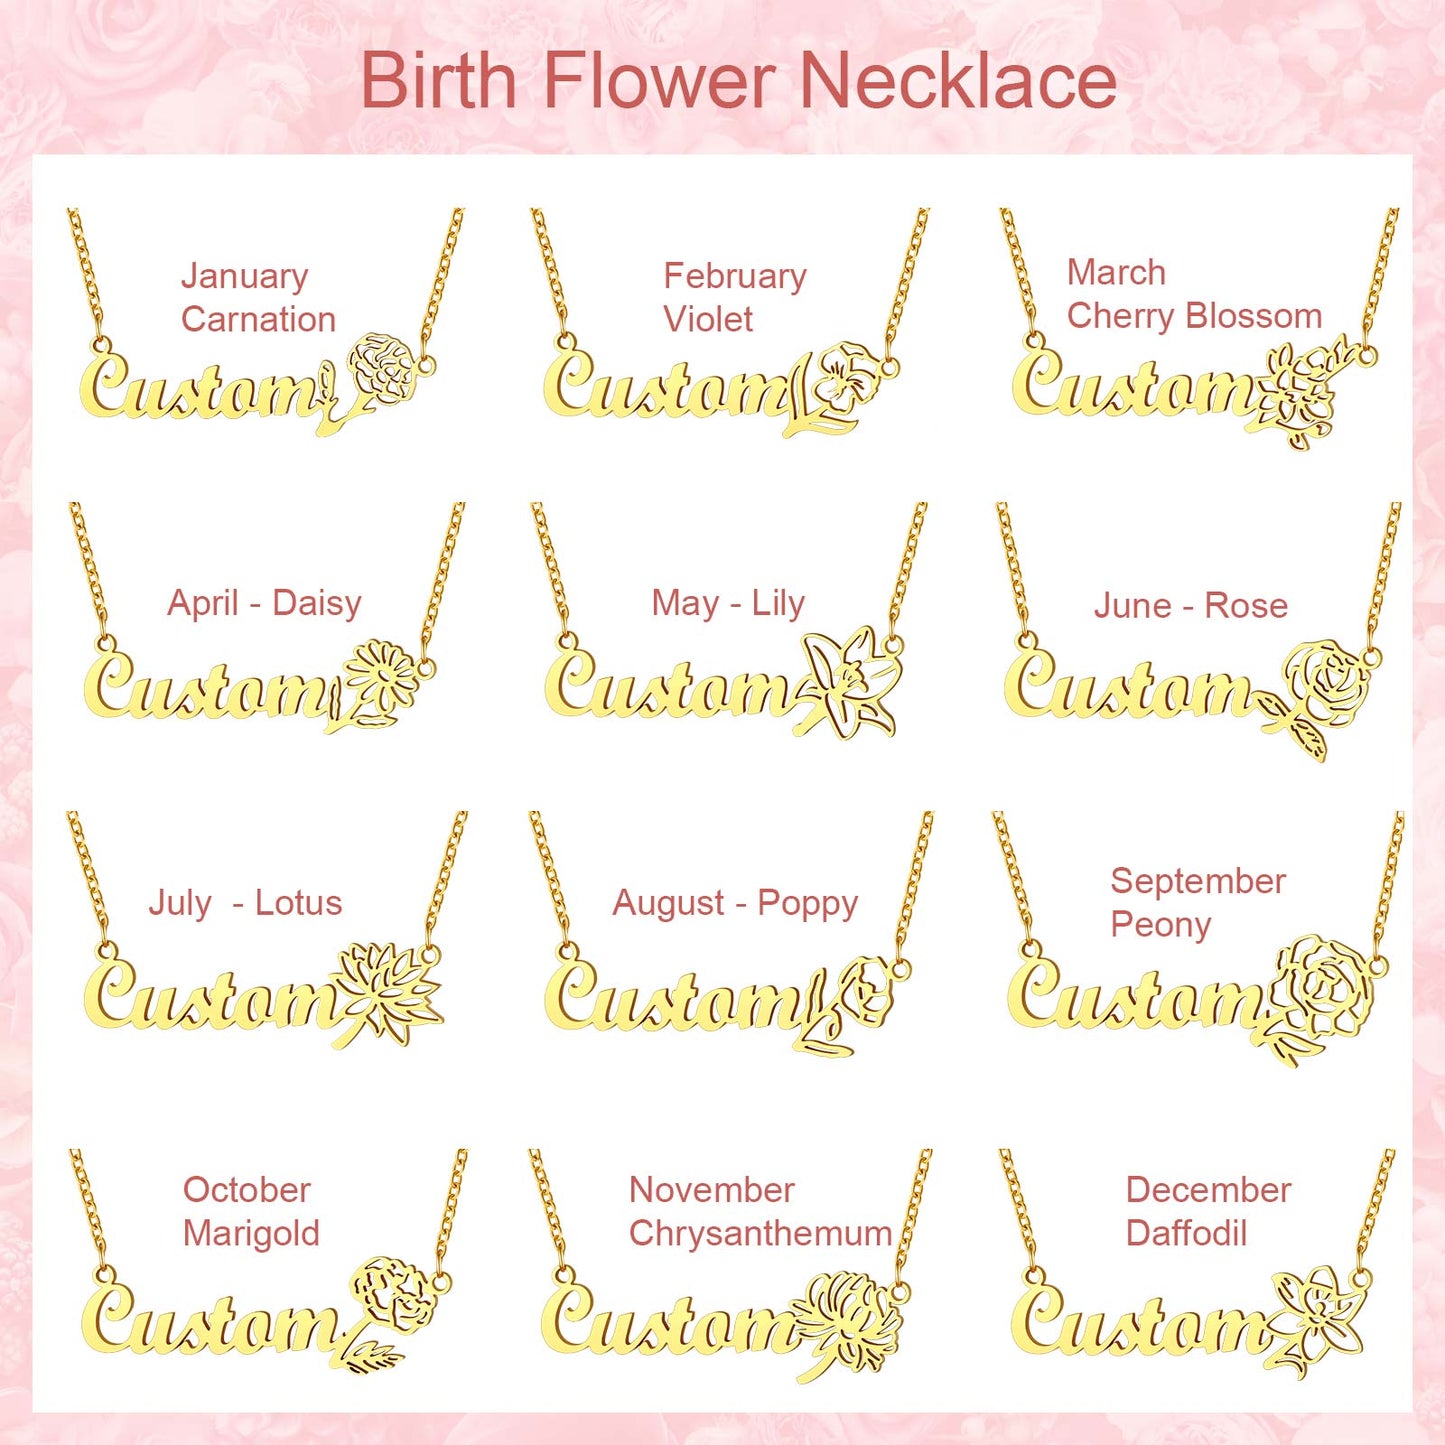 Custom Birth Flower Name Neckalce for Women